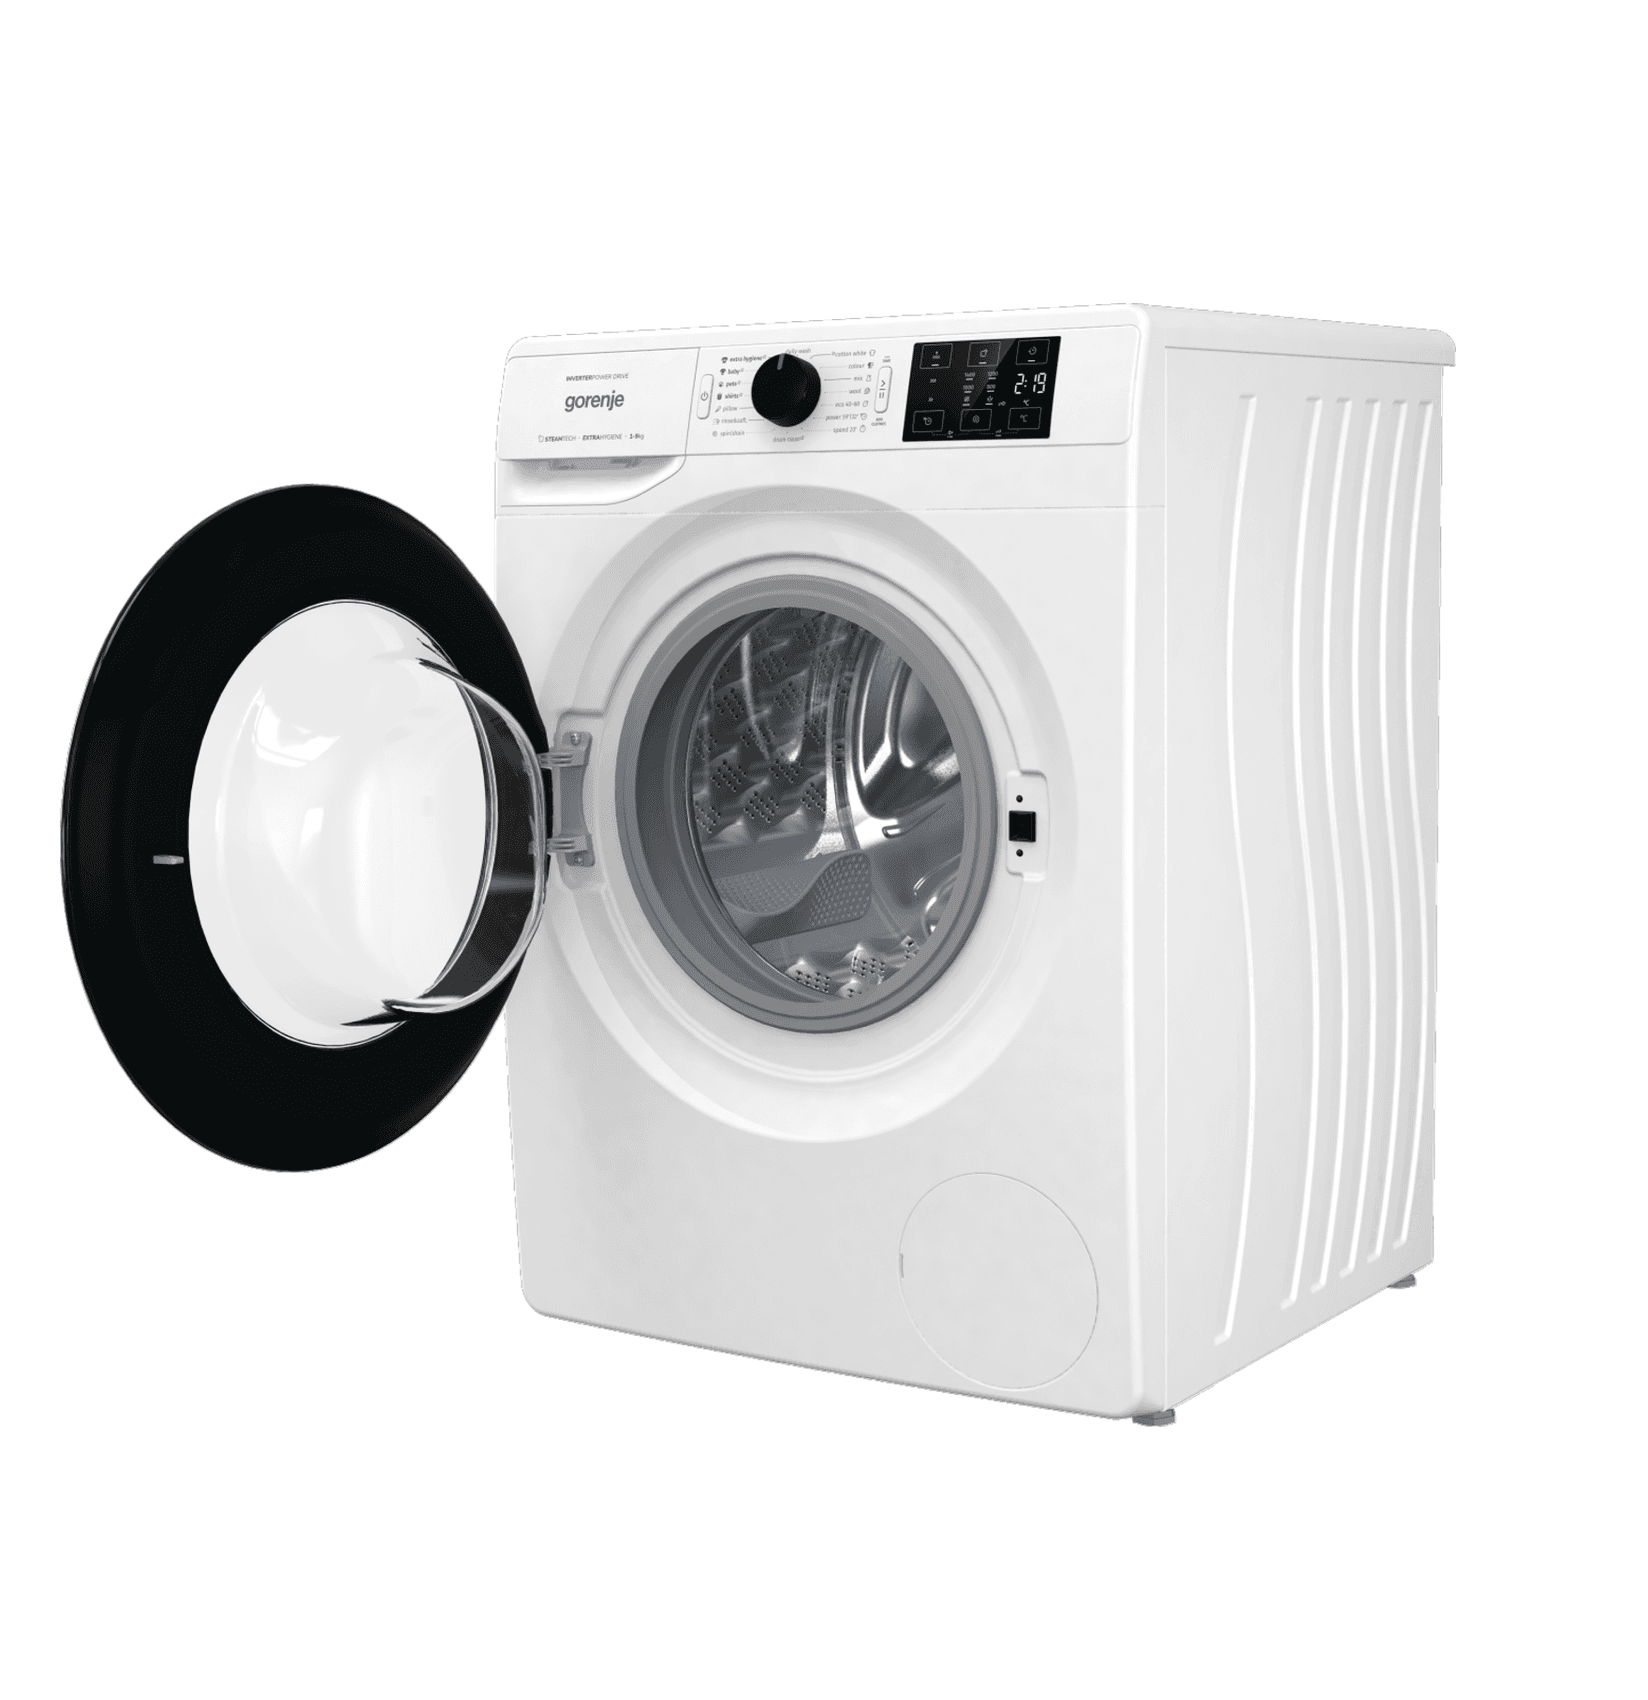 Selected image for GORENJE Mašina za pranje veša WNEI 94 BS bela